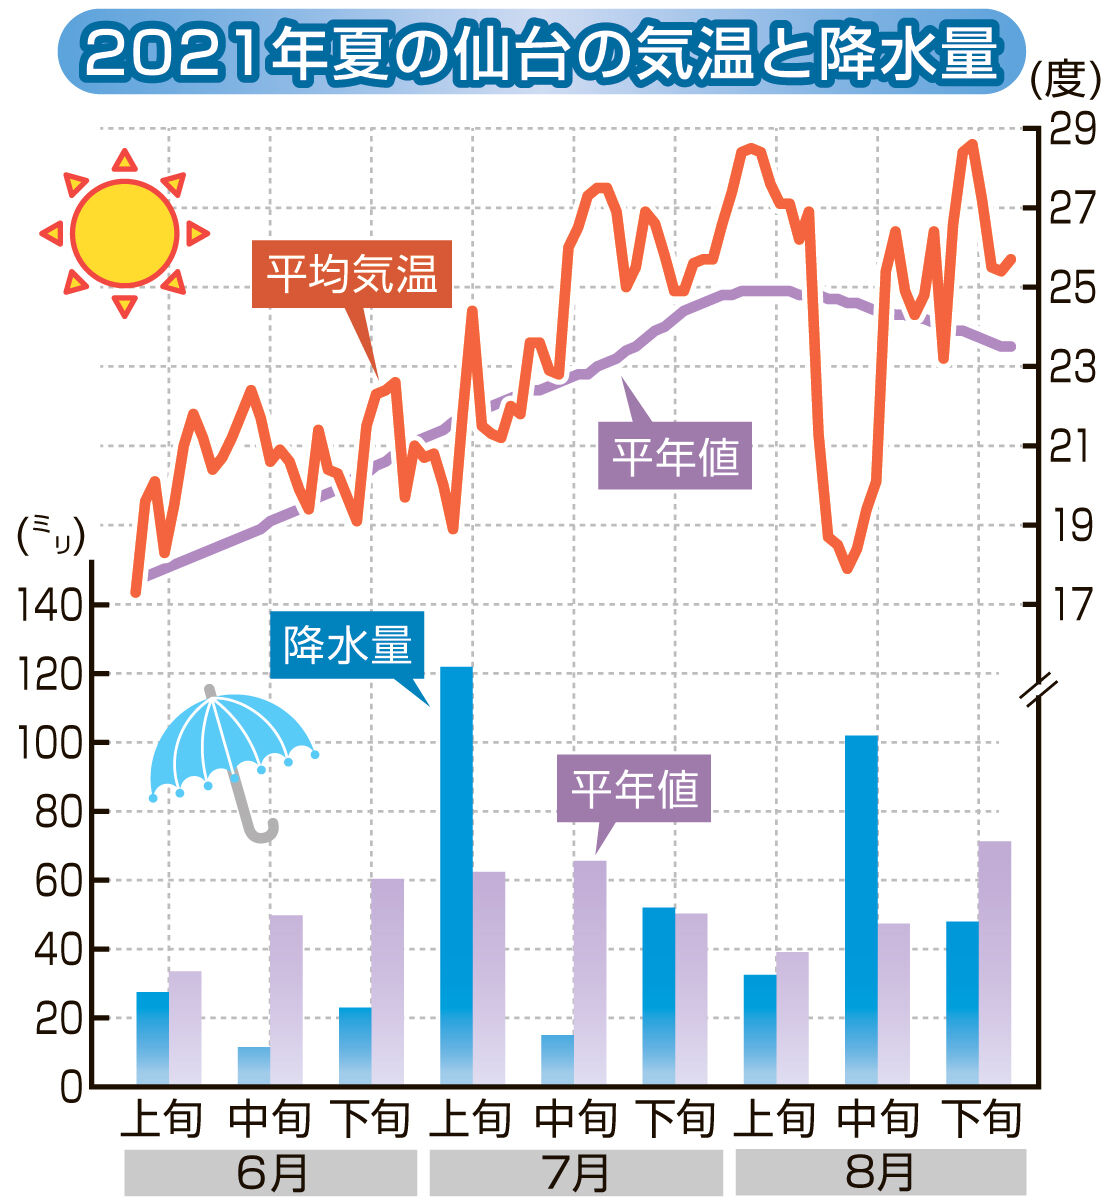 仙台の夏 今年は暑かった 気象庁のオープンデータで分析 河北新報オンラインニュース Online News